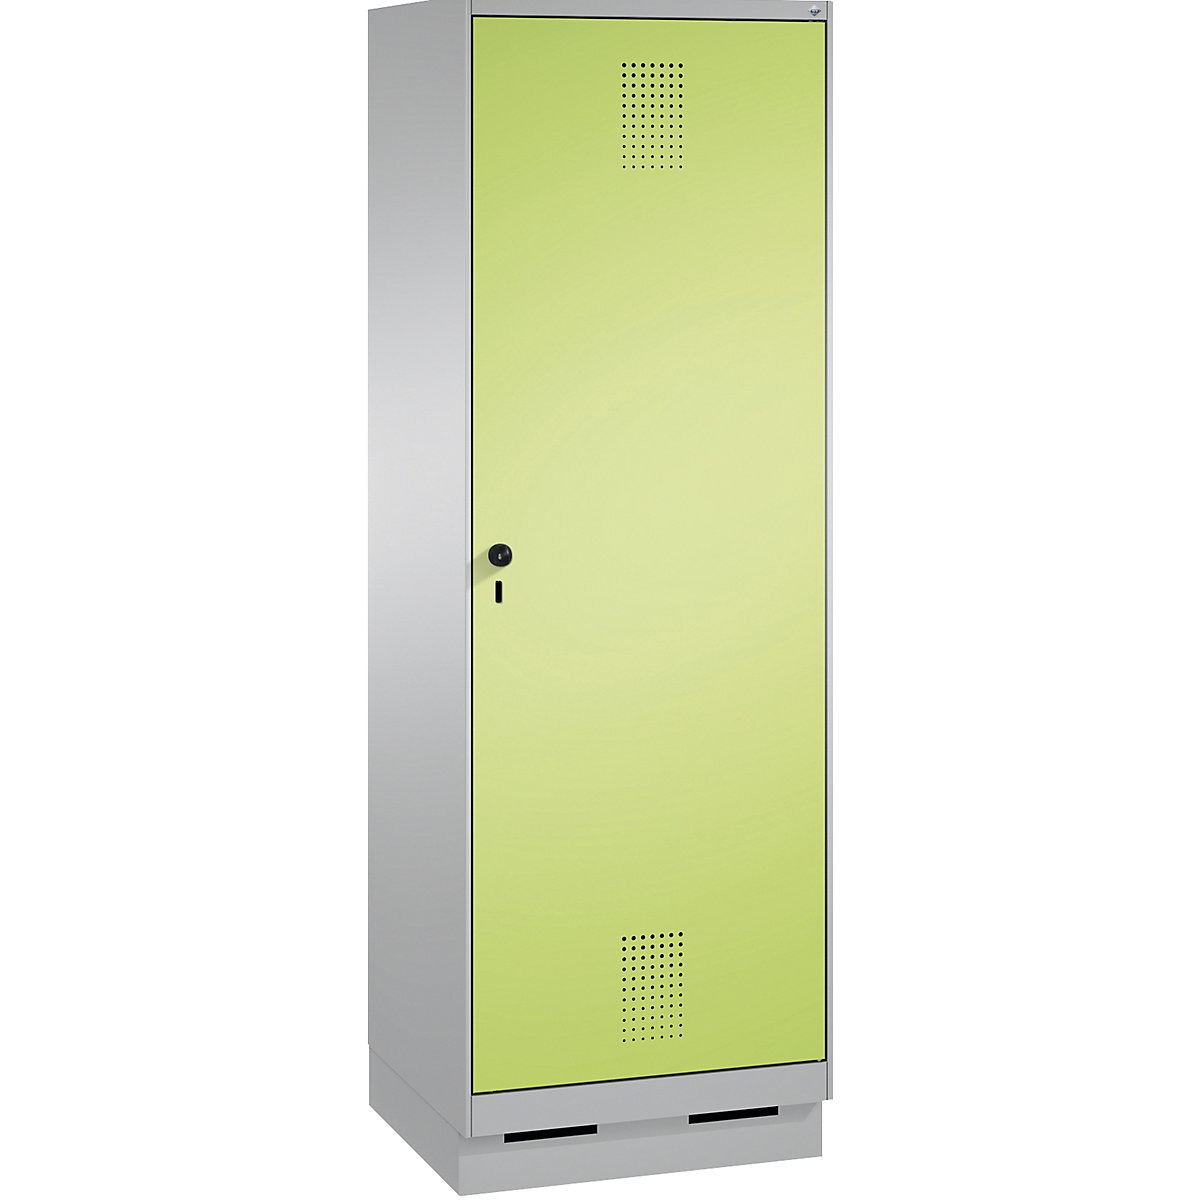 Garderobna omara EVOLO, vrata čez 2 predelka, s podnožjem – C+P, 2 razdelka, 1 vrata, širina razdelka 300 mm, bela aluminijasta / rumeno zelena-6